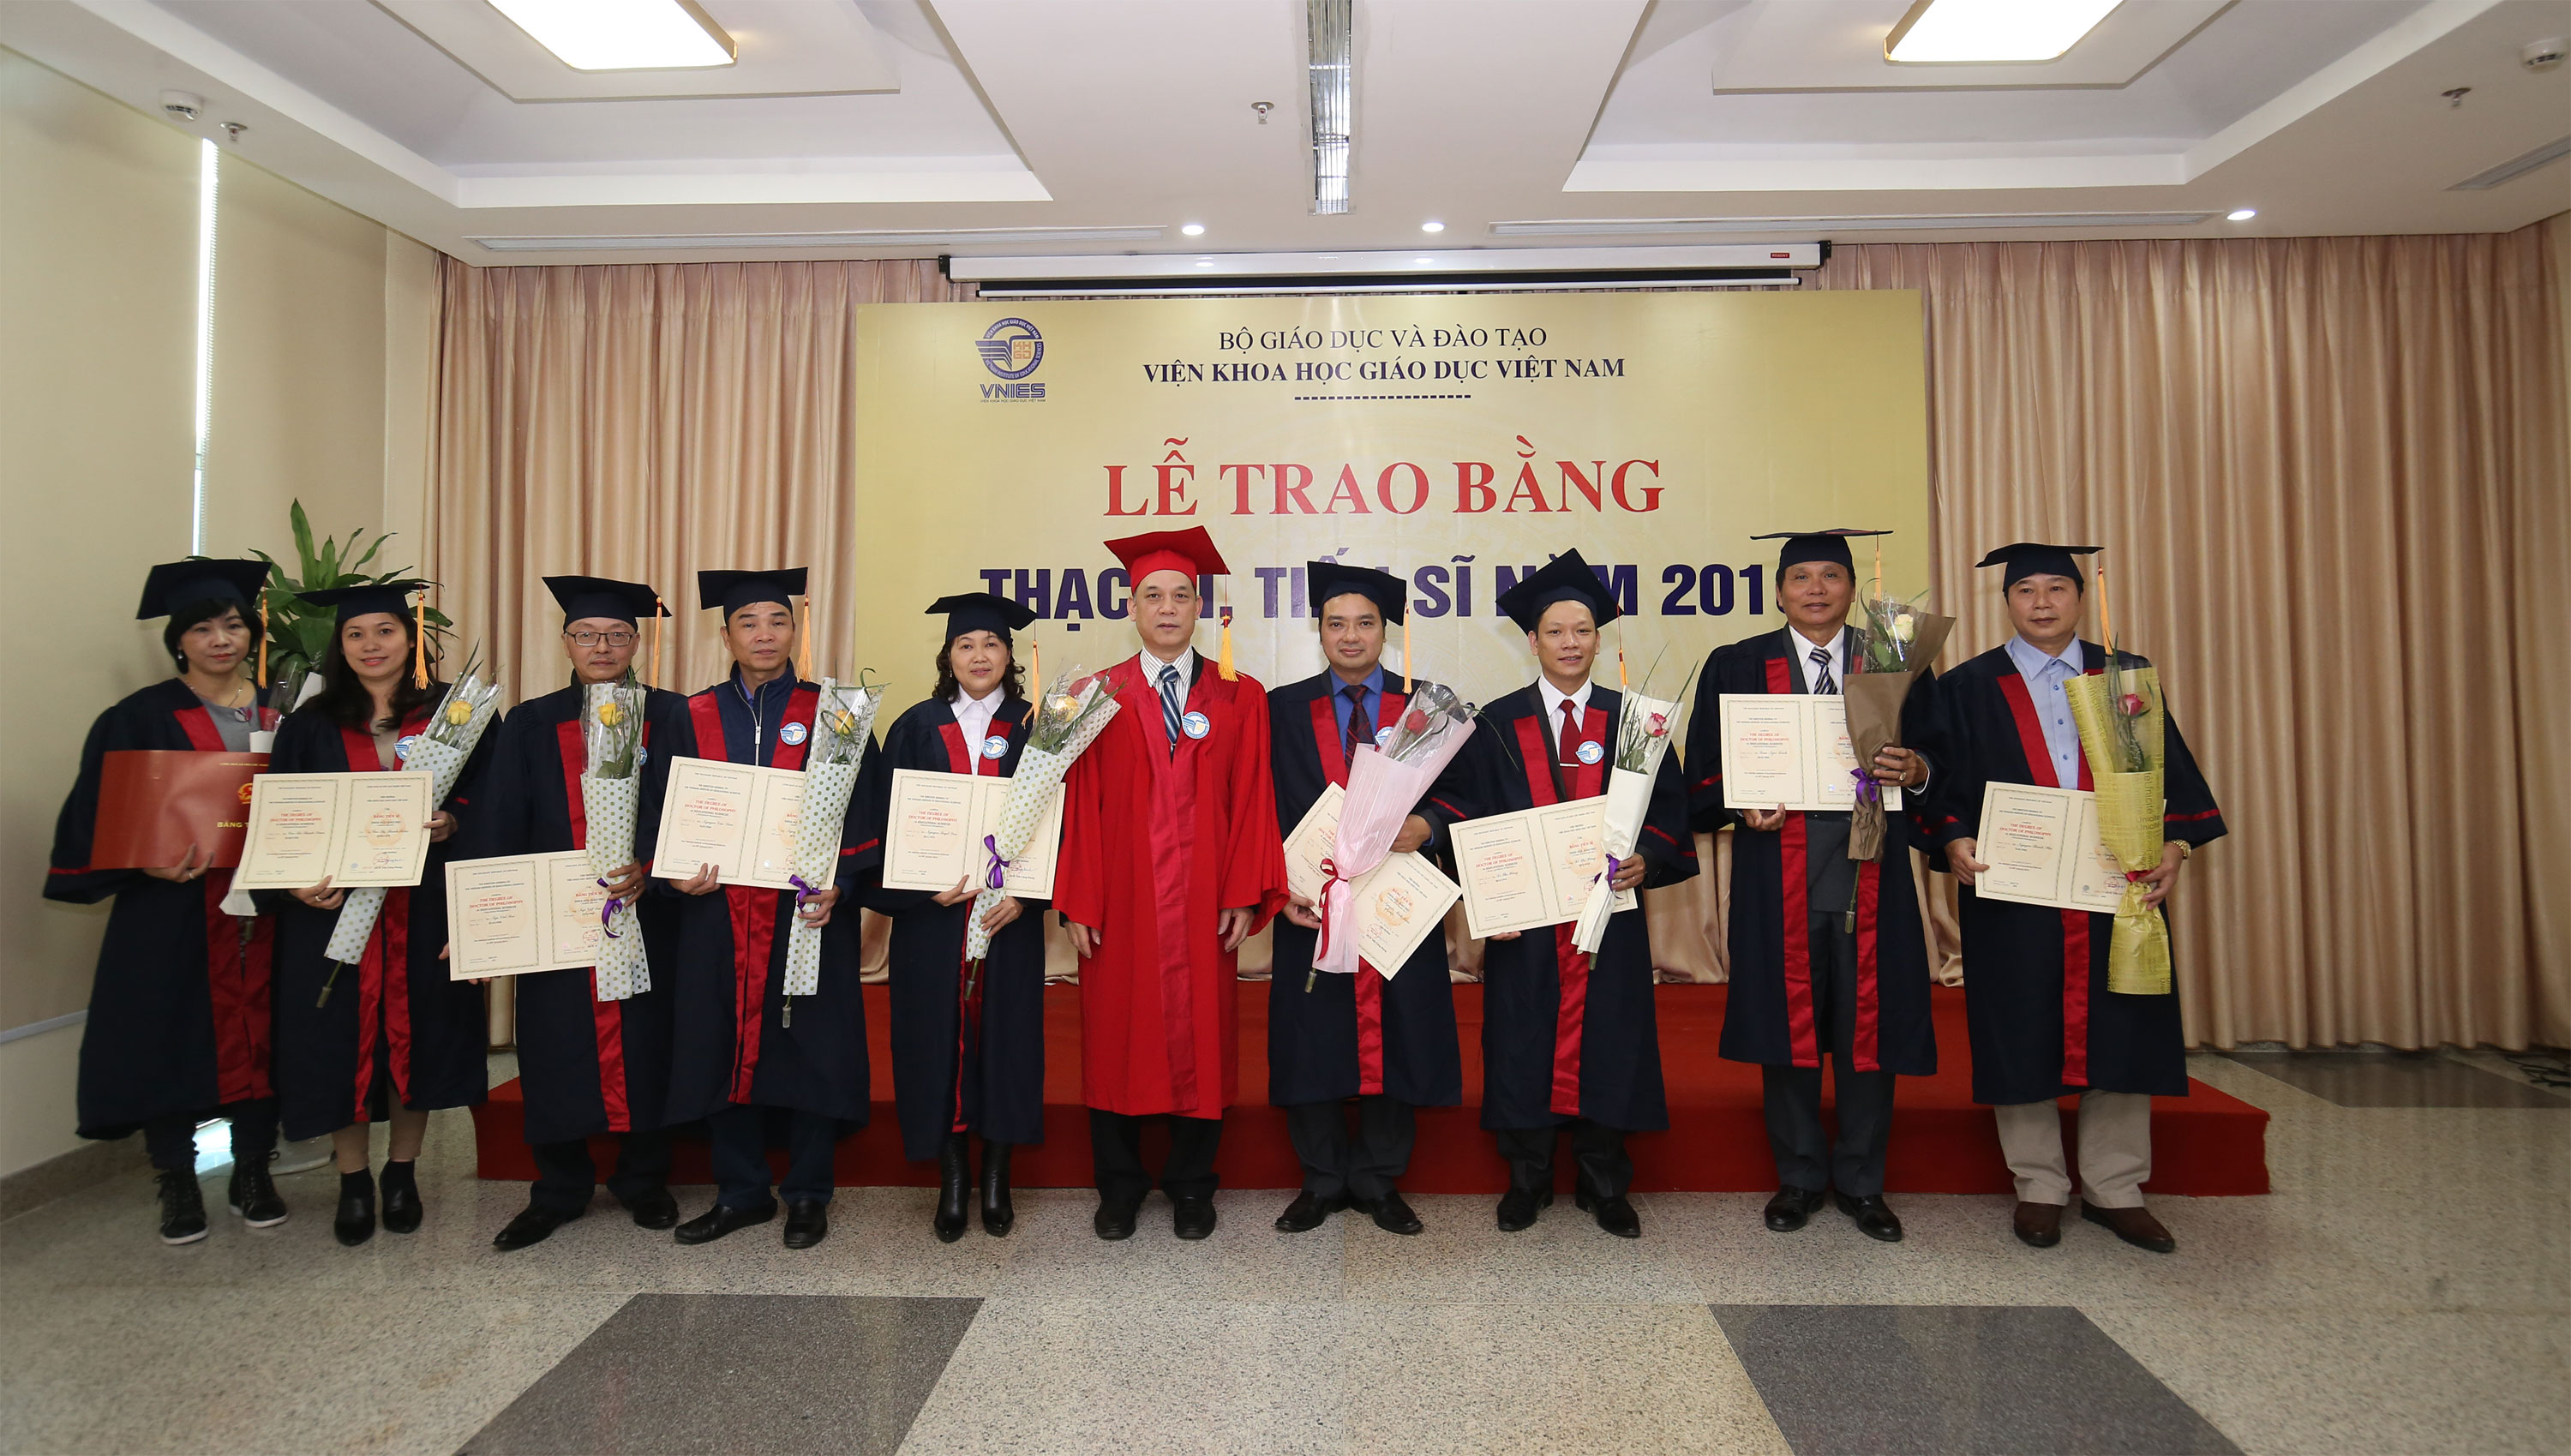 Viện Khoa học giáo dục Việt Nam tổ chức lễ trao bằng Thạc sĩ và Tiến sĩ năm 2016